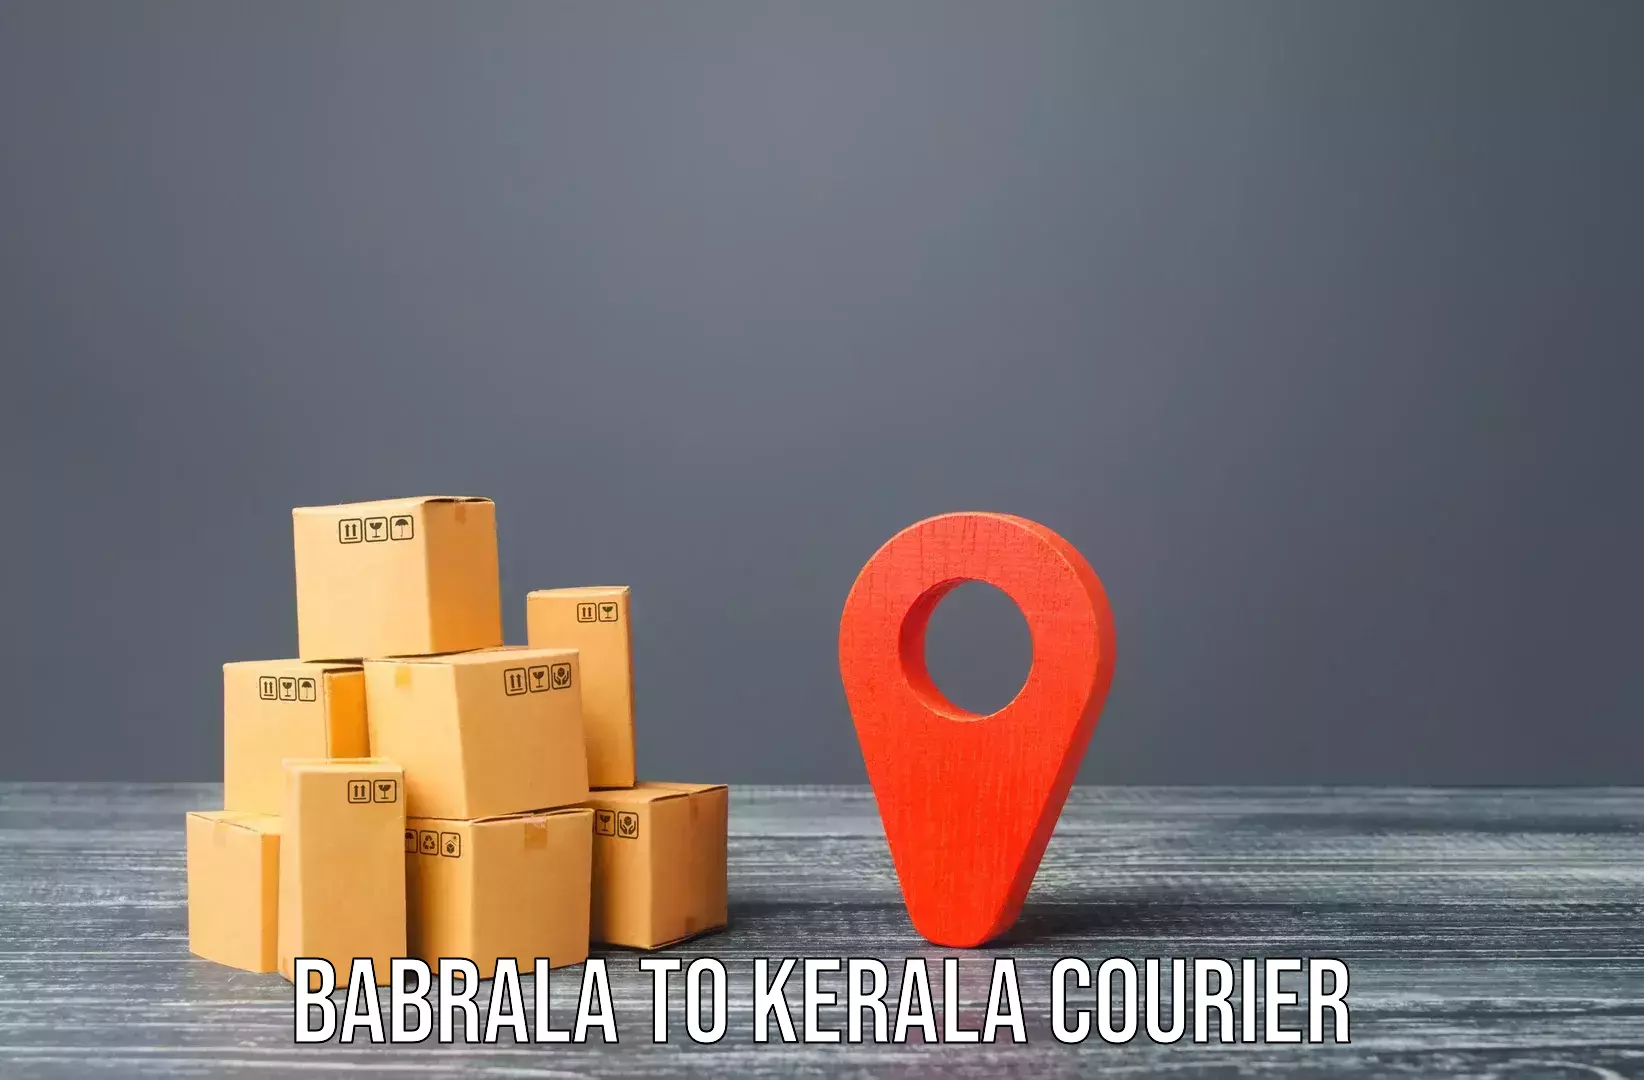 Furniture transport professionals Babrala to Panthalam